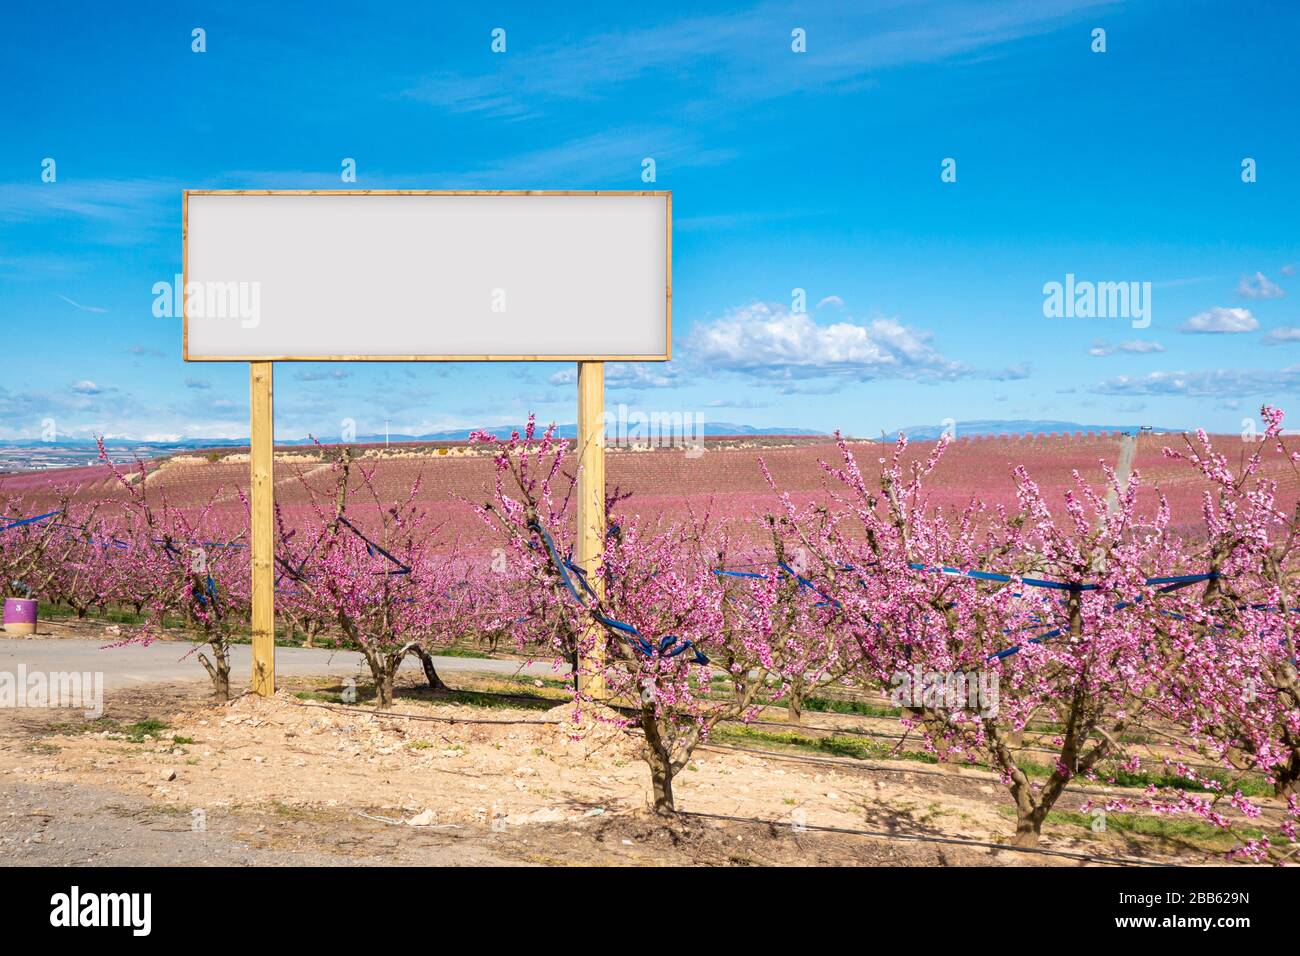 Maquette de panneau vierge dans l'agriculture. Fleurs de fleurs roses dans un champ de pêche. Banque D'Images